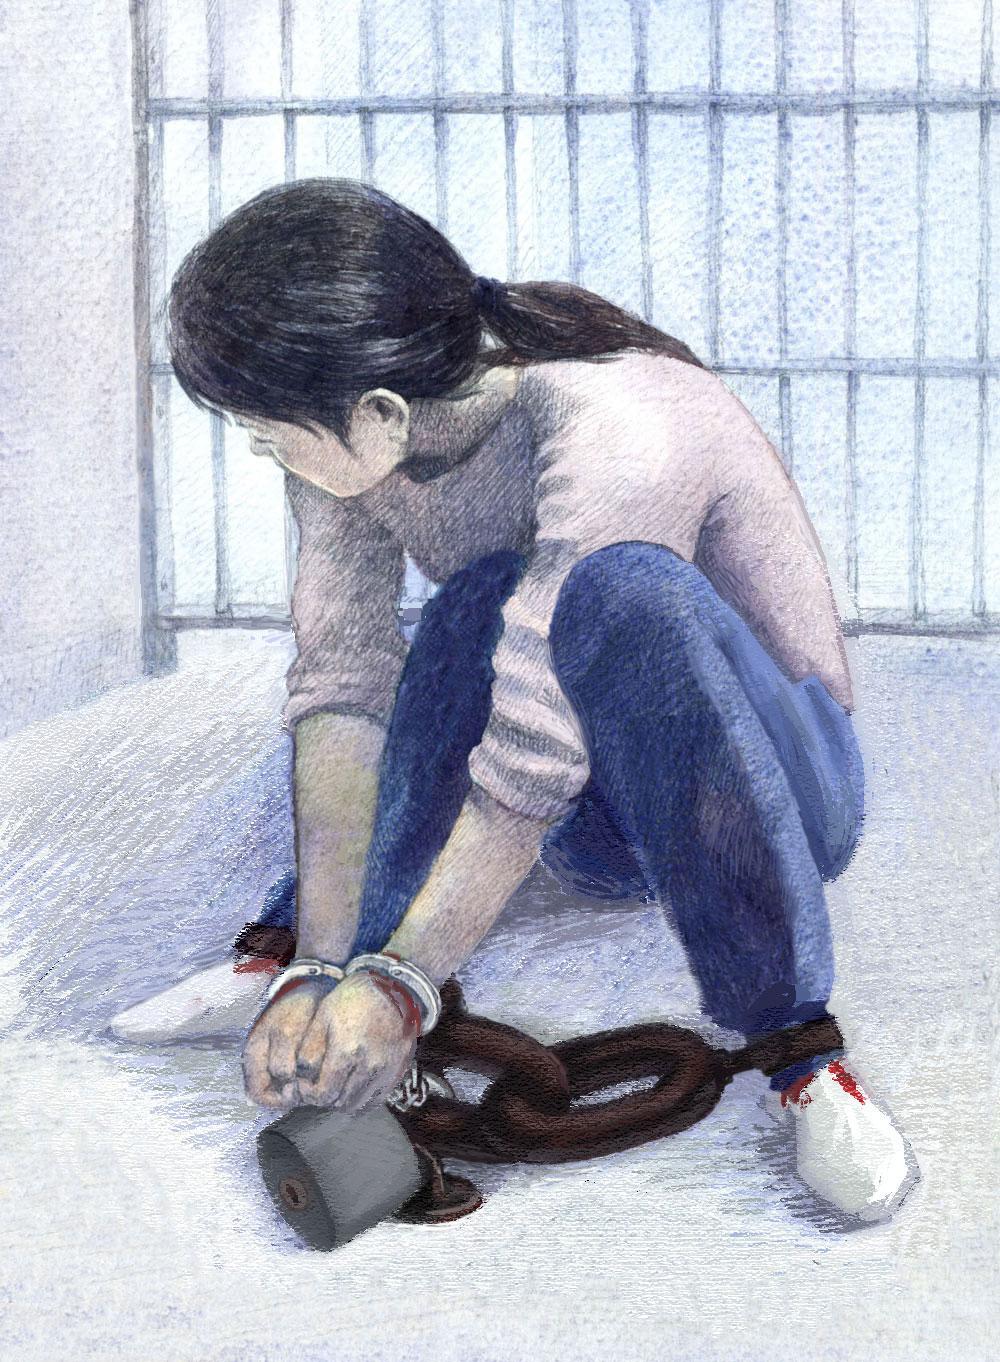 Illustration: Shackled to the ground. (<a href="https://en.minghui.org/">Minghui.org</a>)